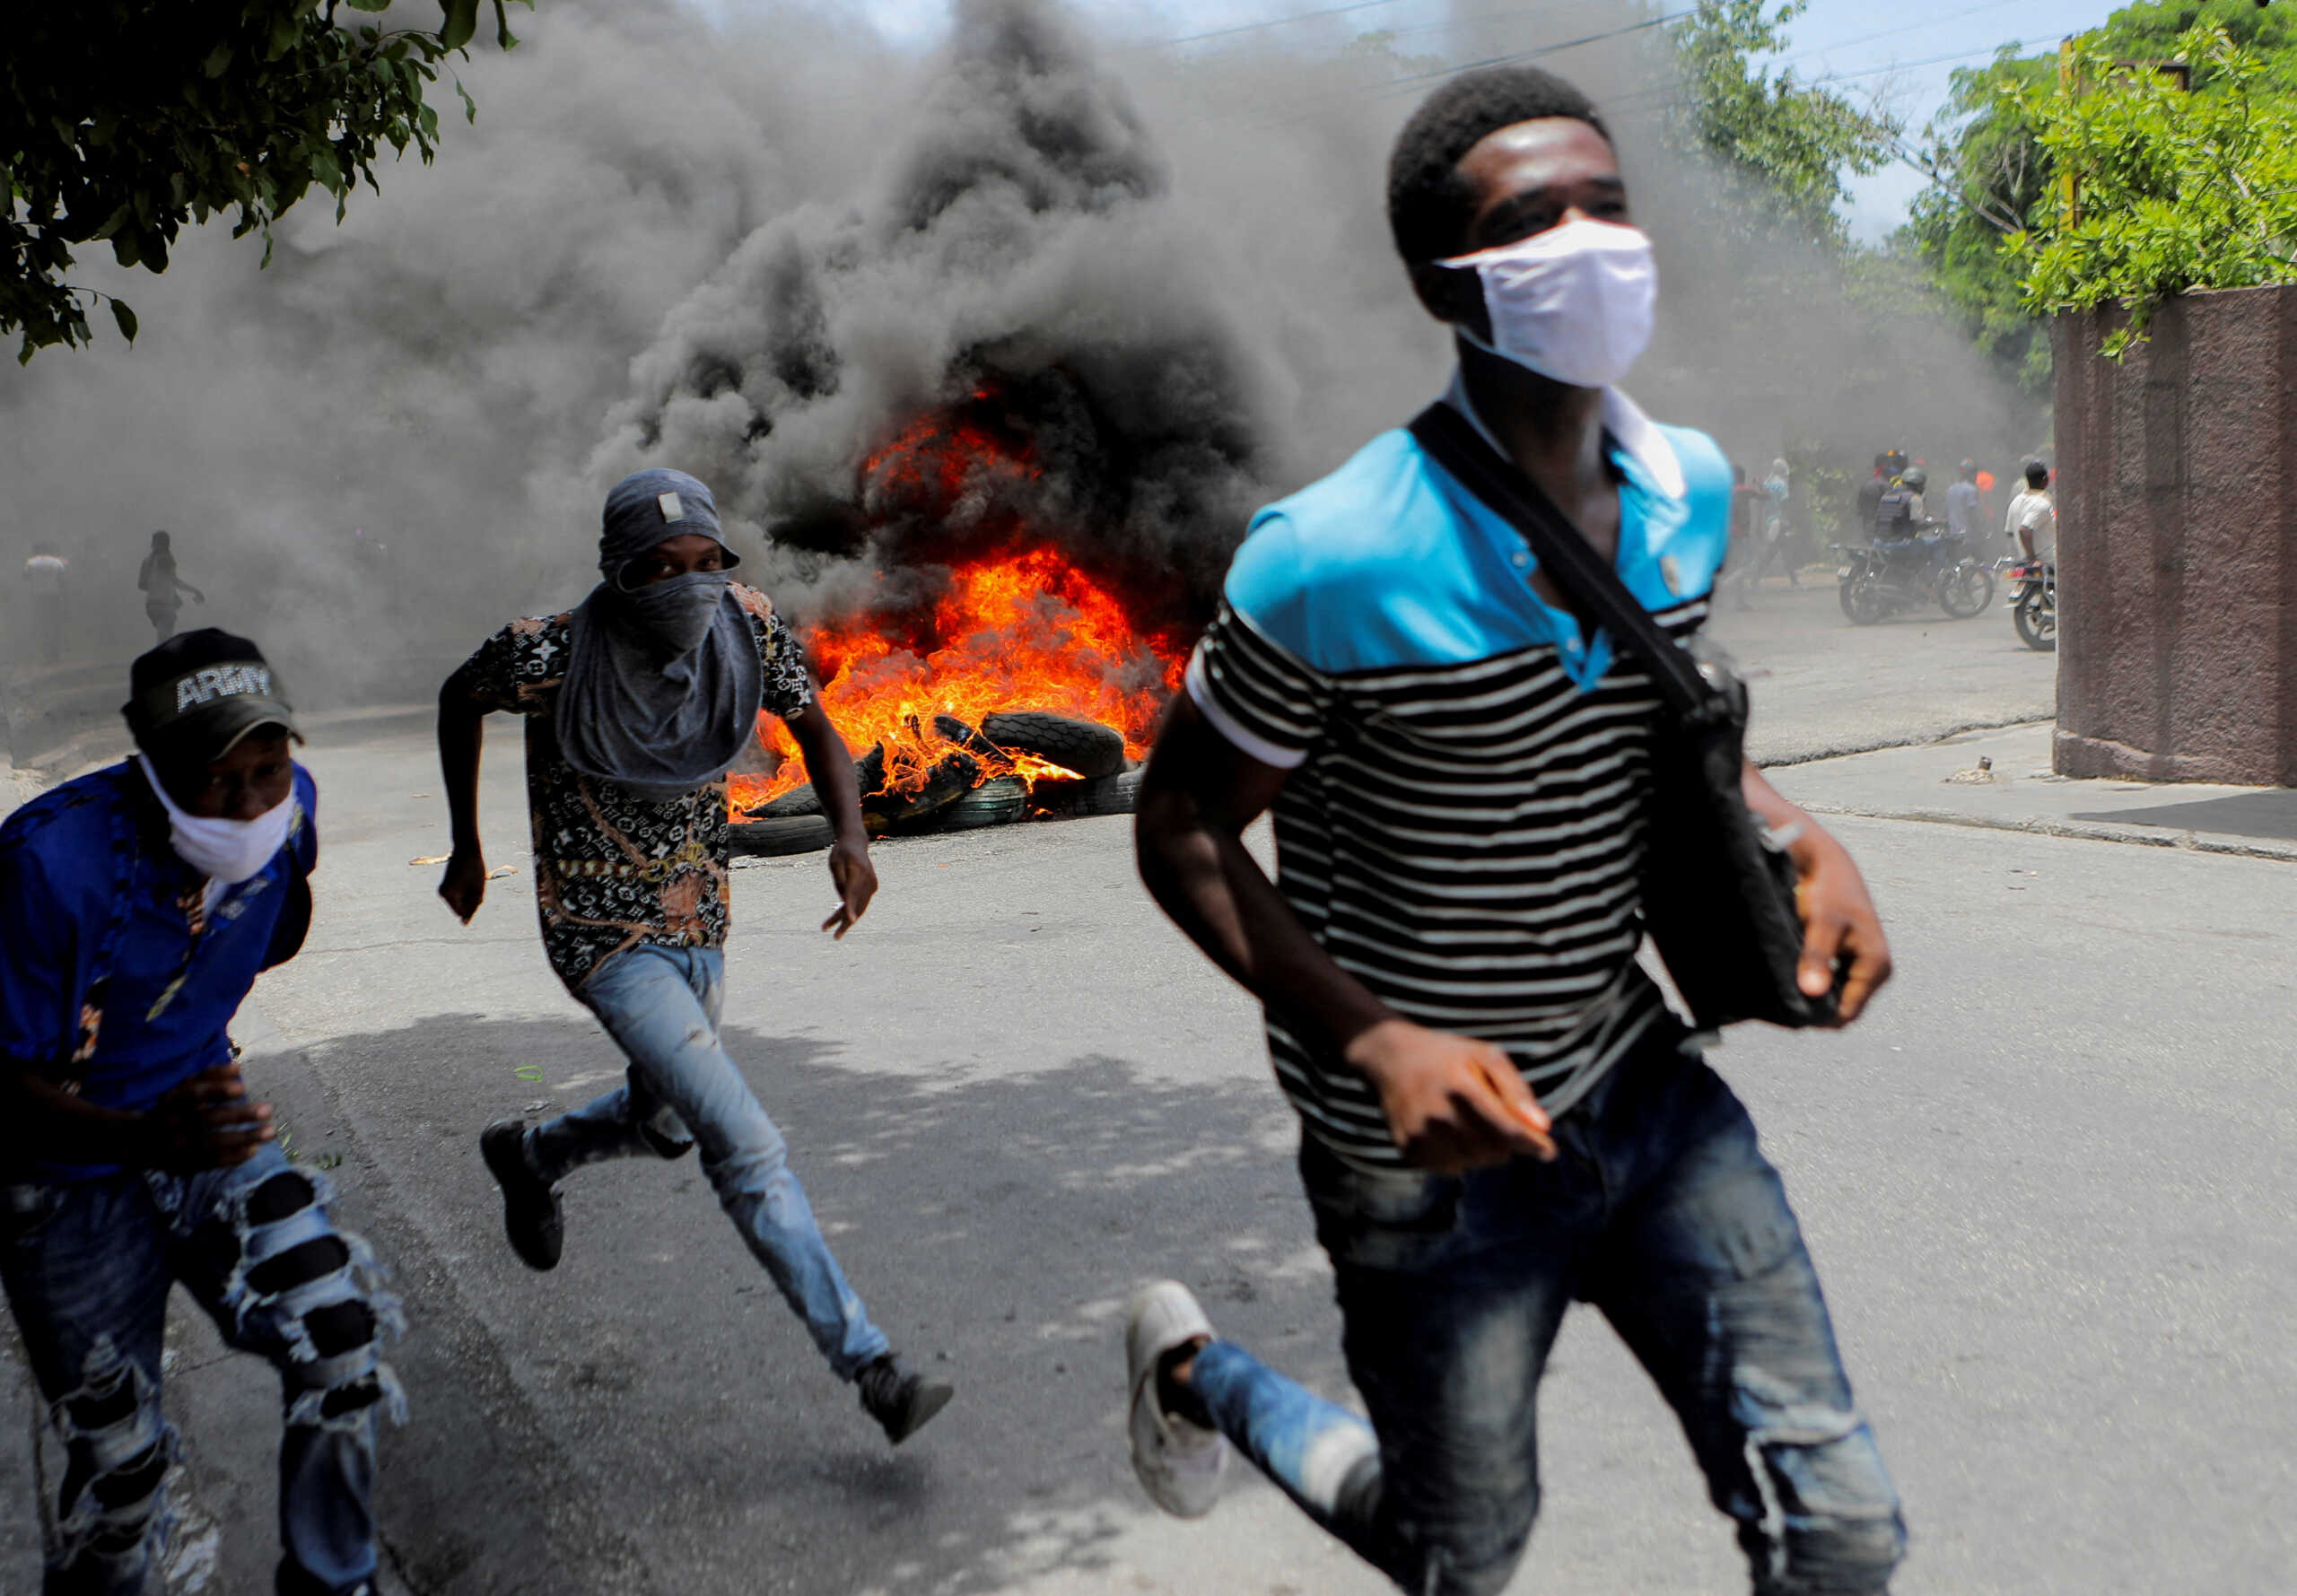 Αϊτή: Κολομβιανός απόστρατος ομολόγησε συνωμοσία για τη δολοφονία του προέδρου Ζοβενέλ Μοΐζ